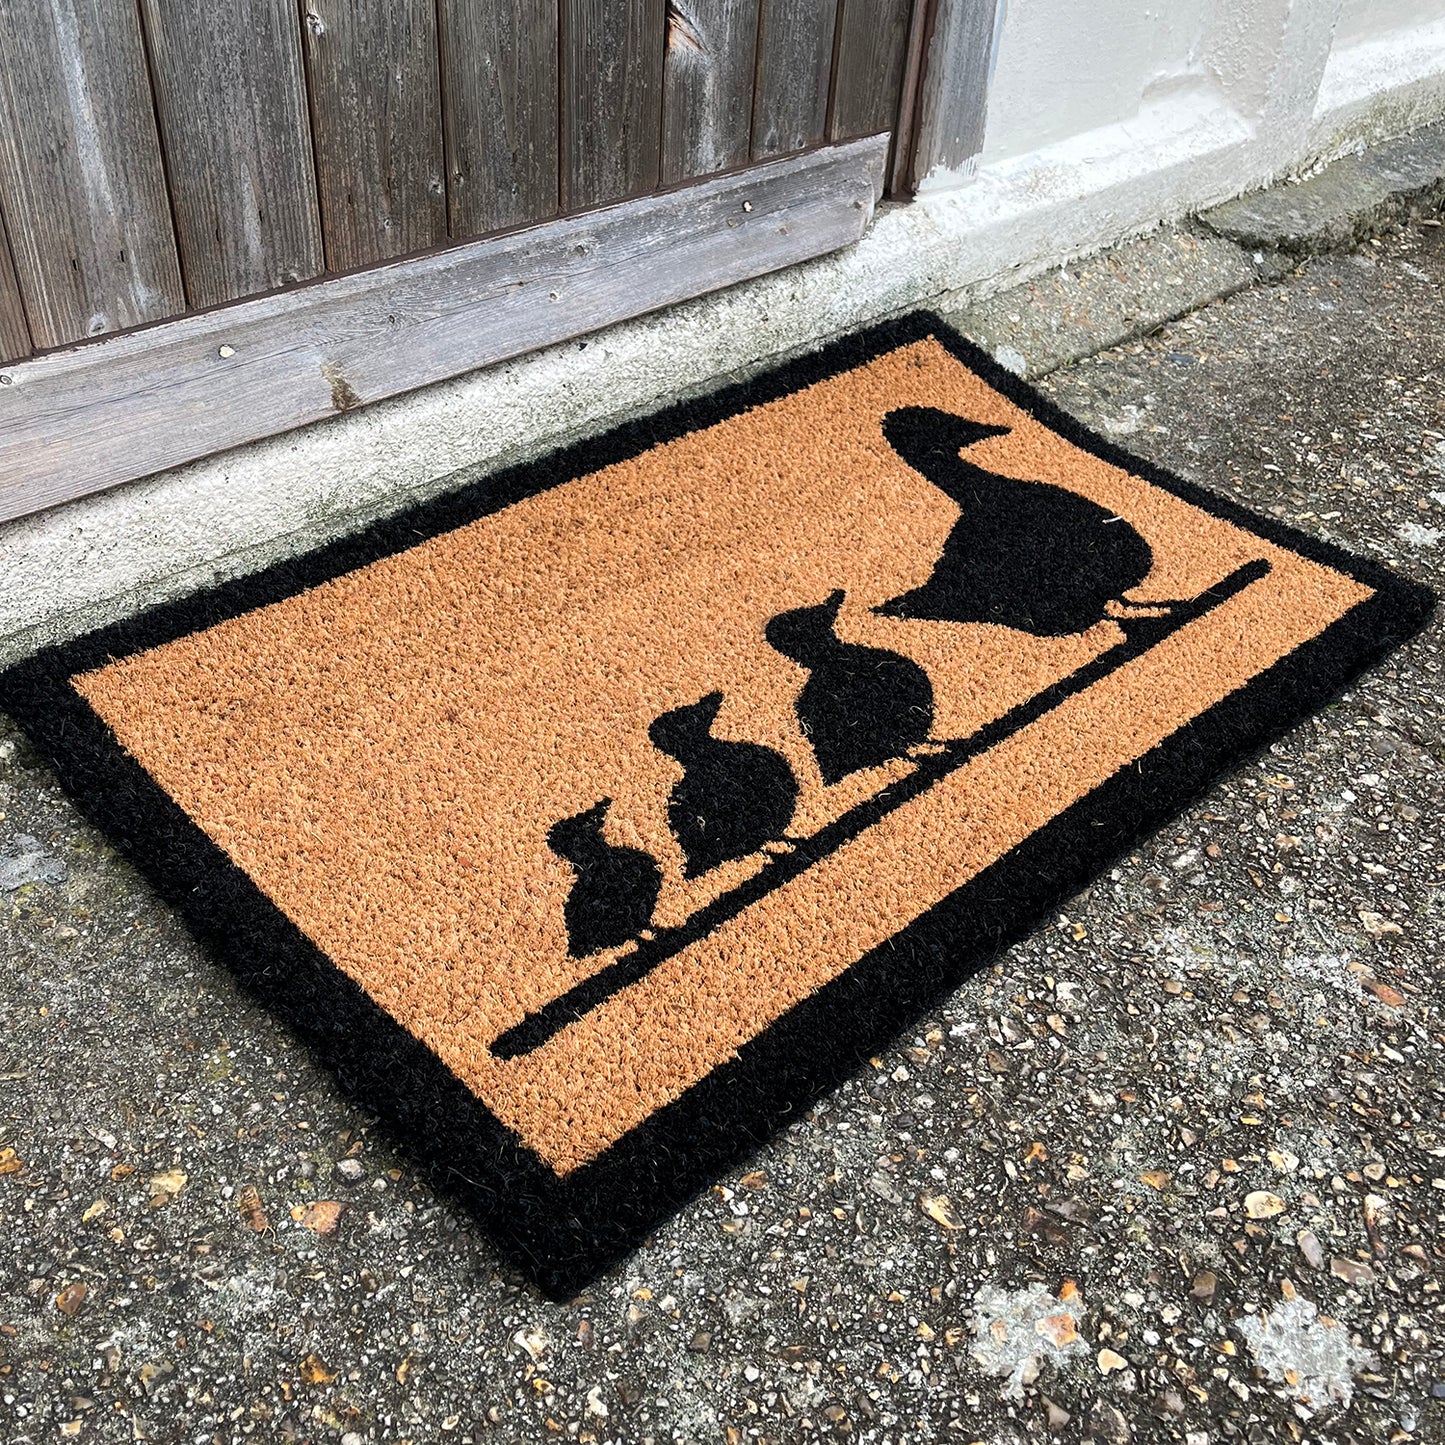 Duck Family Indoor & Outdoor Coir Doormat